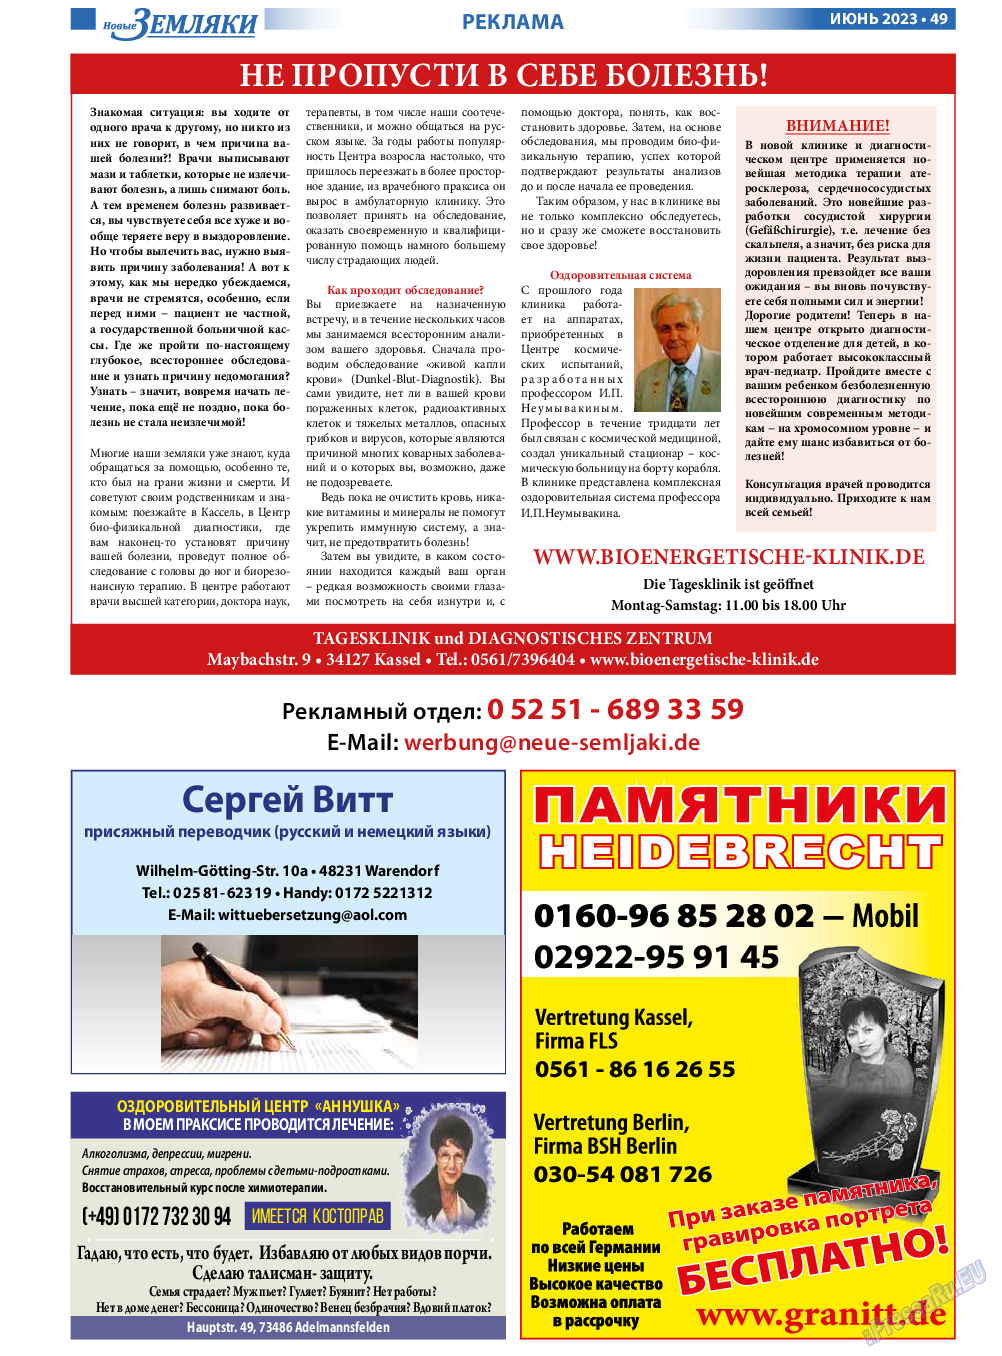 Новые Земляки, газета. 2023 №6 стр.49